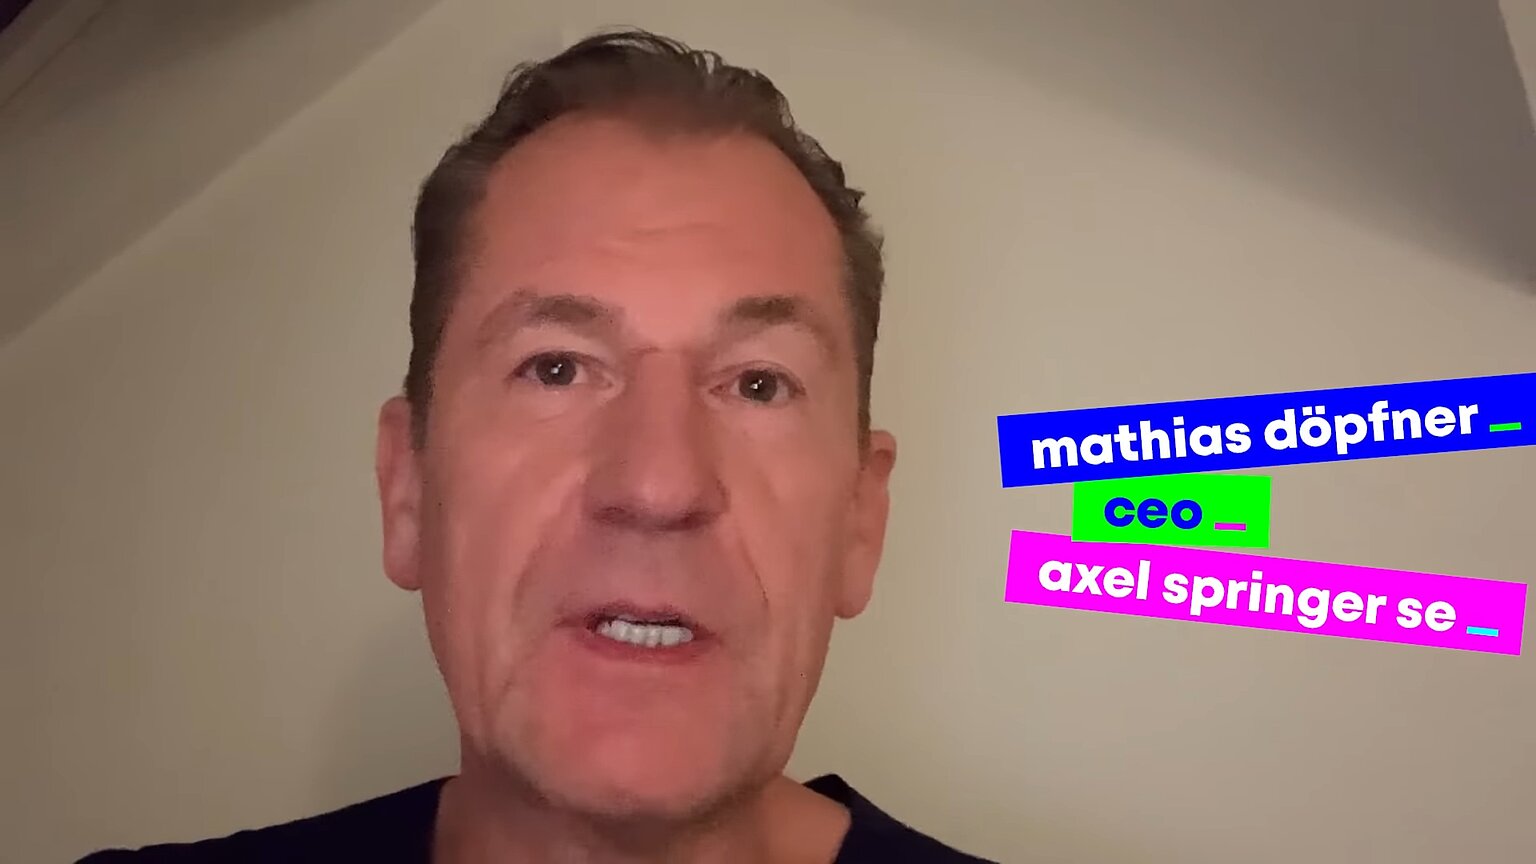  – Videobotschaft von Mathias Döpfner auf dem YouTube-Kanal von Axel Springer. Screenshot: DJV.